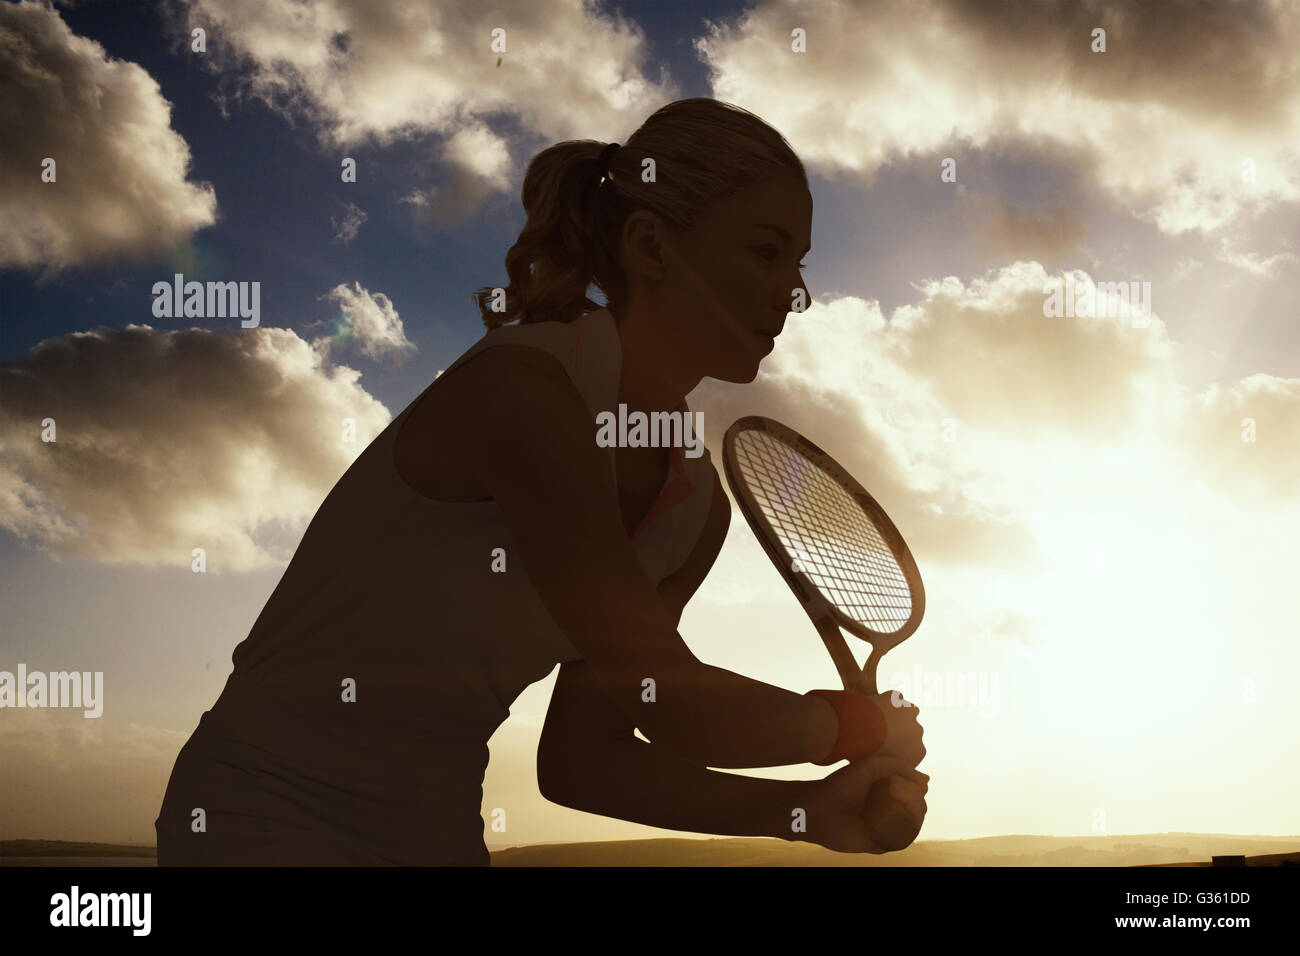 Image composite de sportif jouer au tennis avec une raquette Banque D'Images